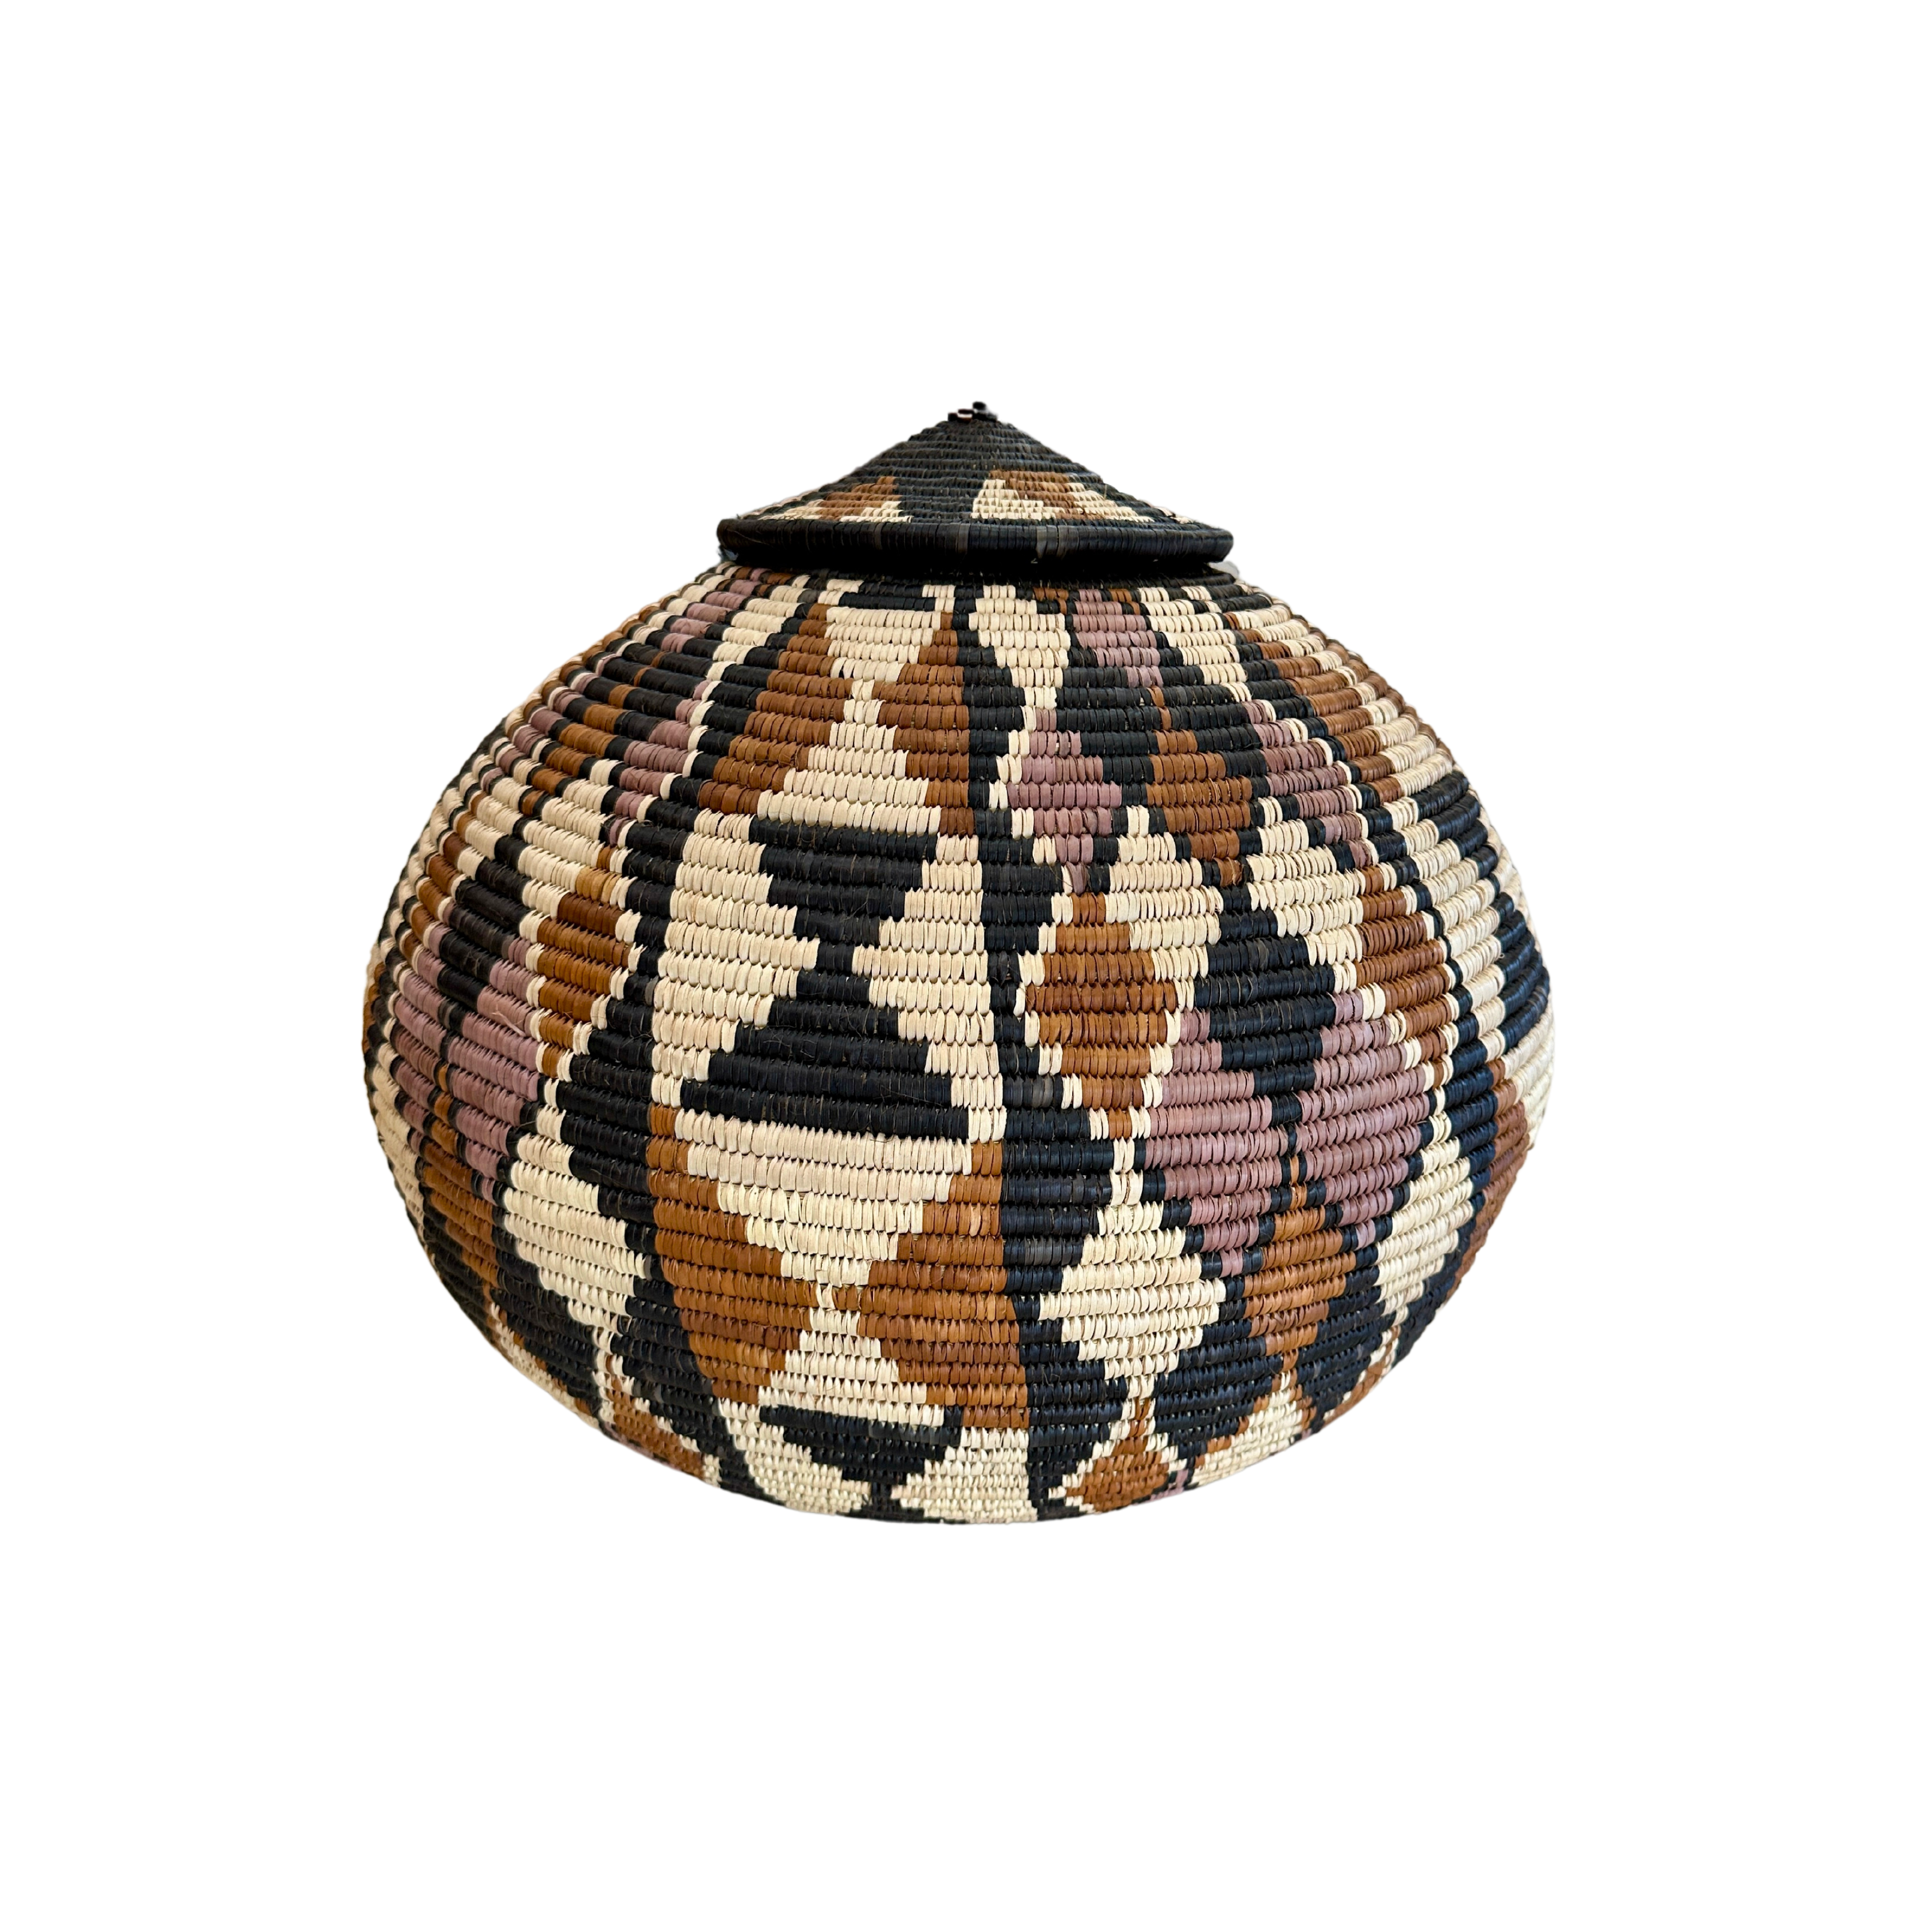 Hand Weaved Marriage Basket - The Ntombi Basket